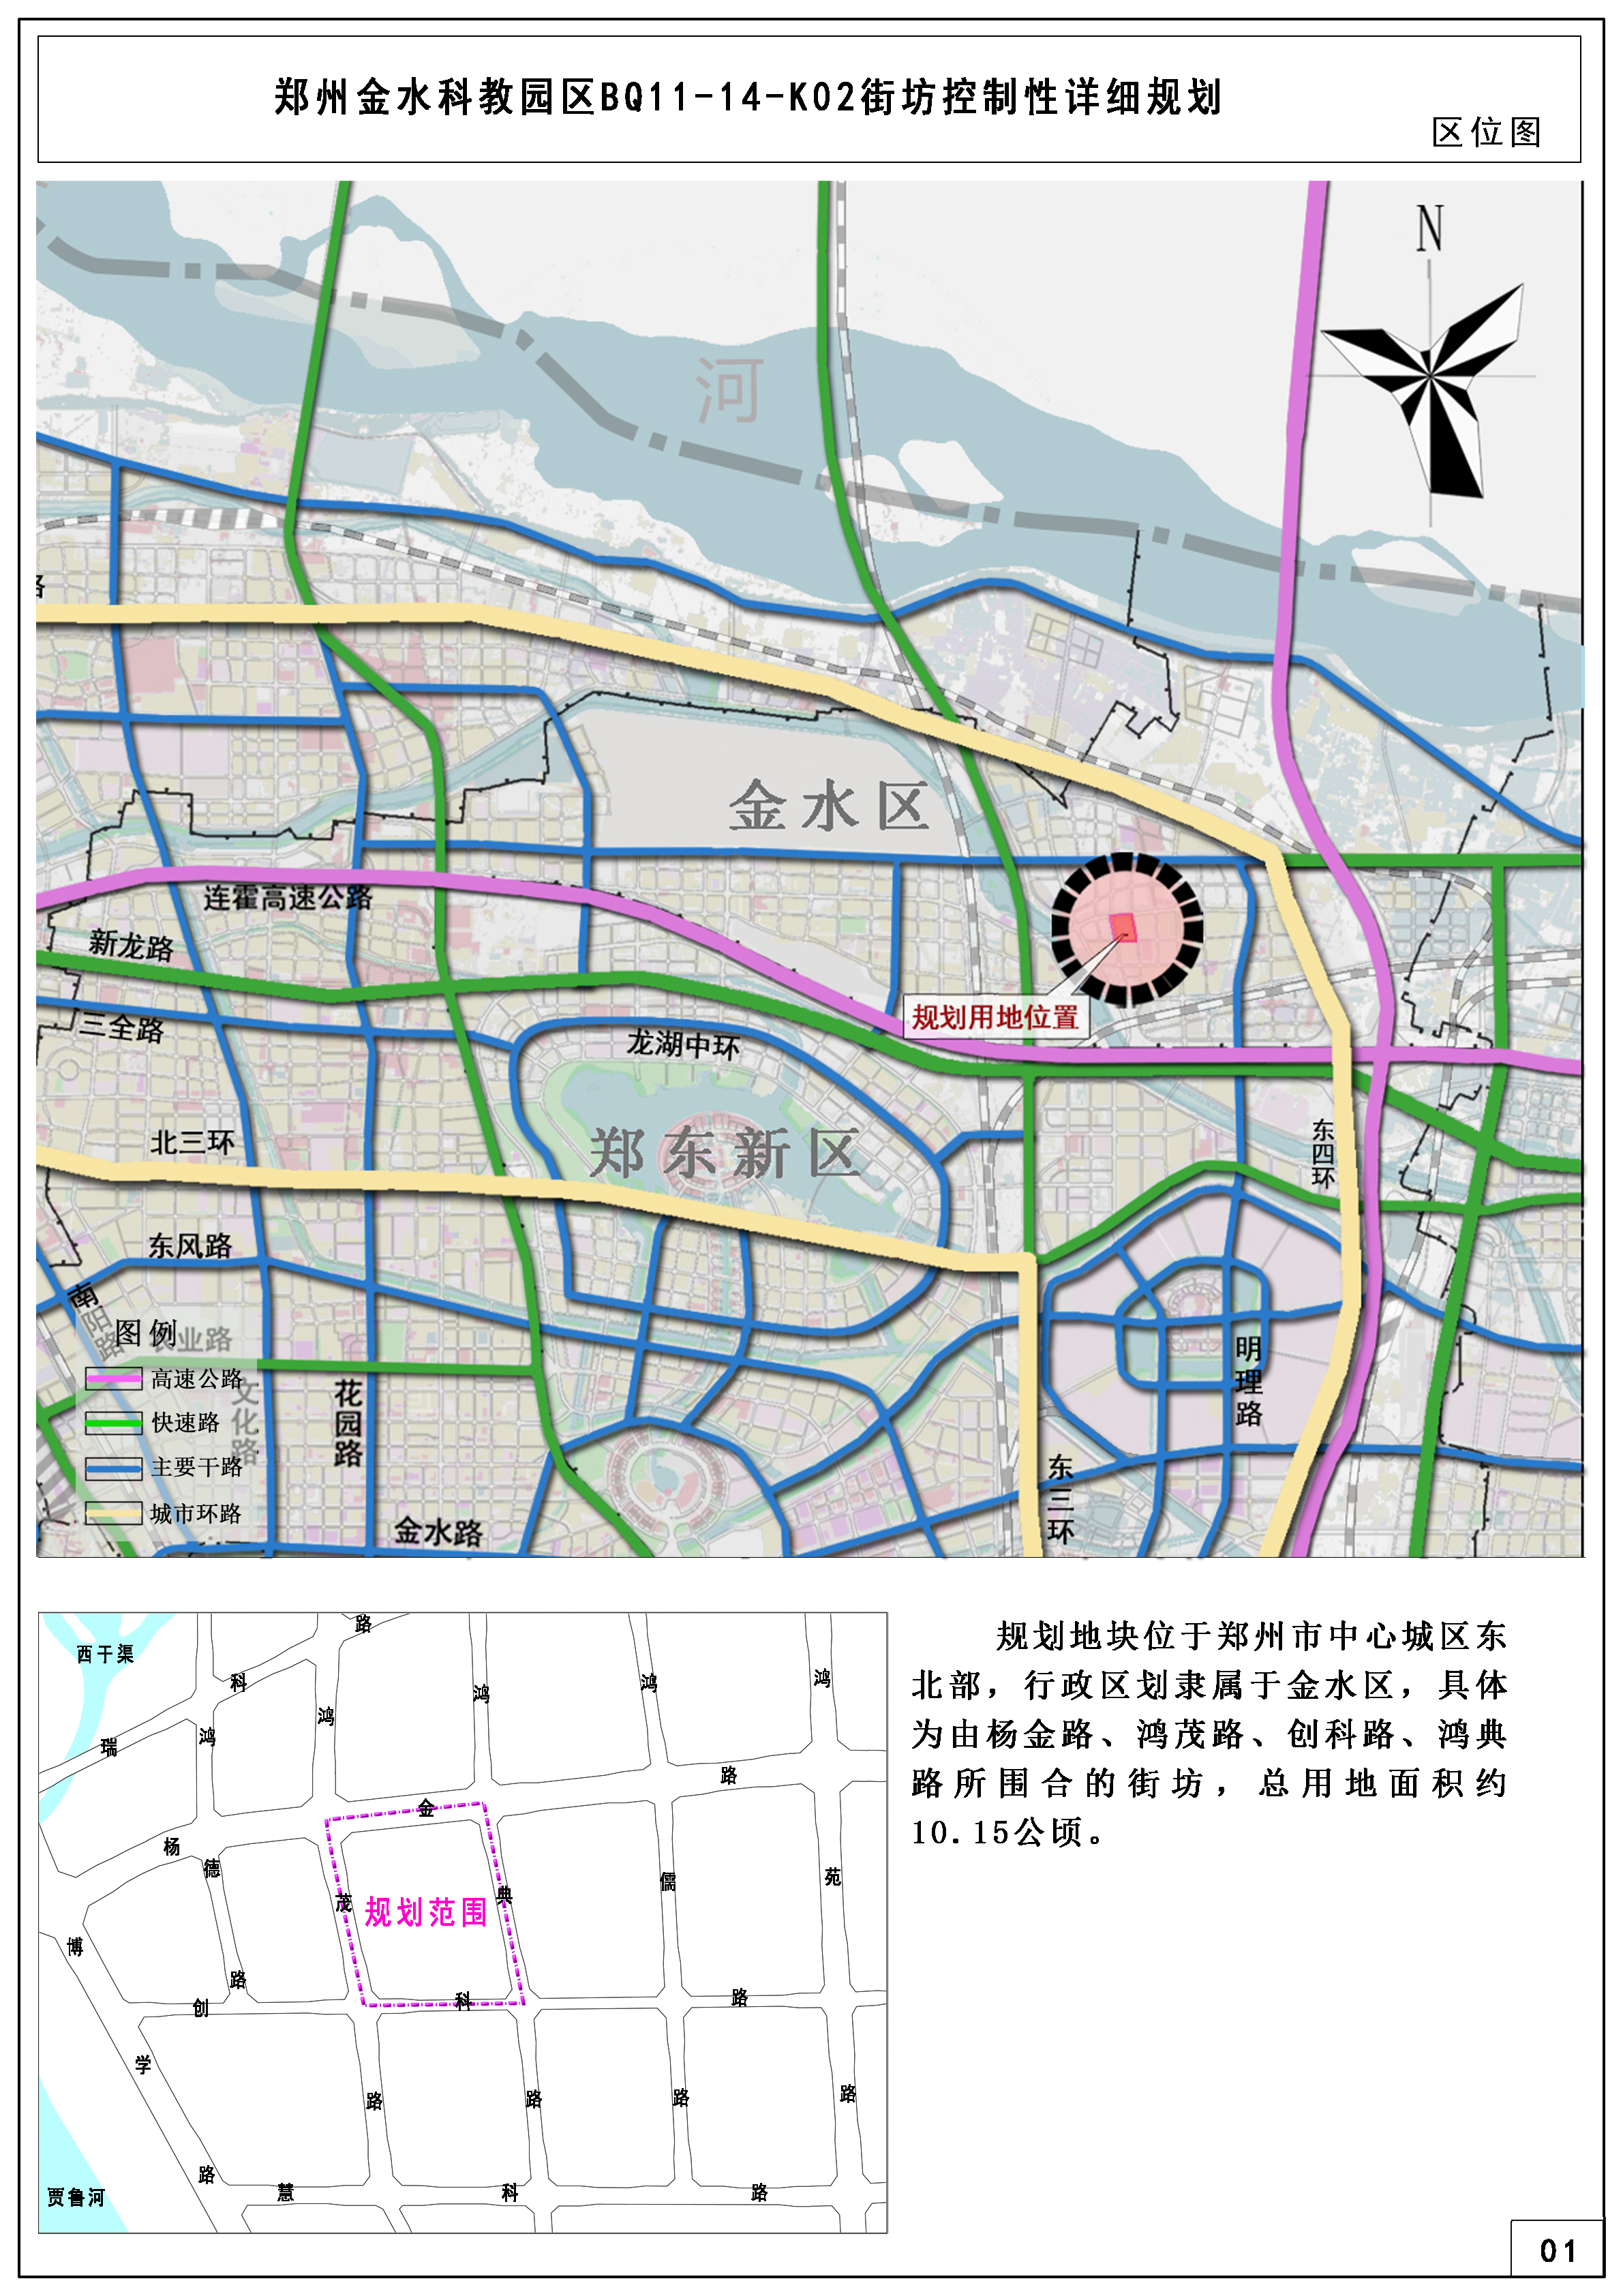 郑州金水科教园区BQ11-14-K02街坊控制性详细规划